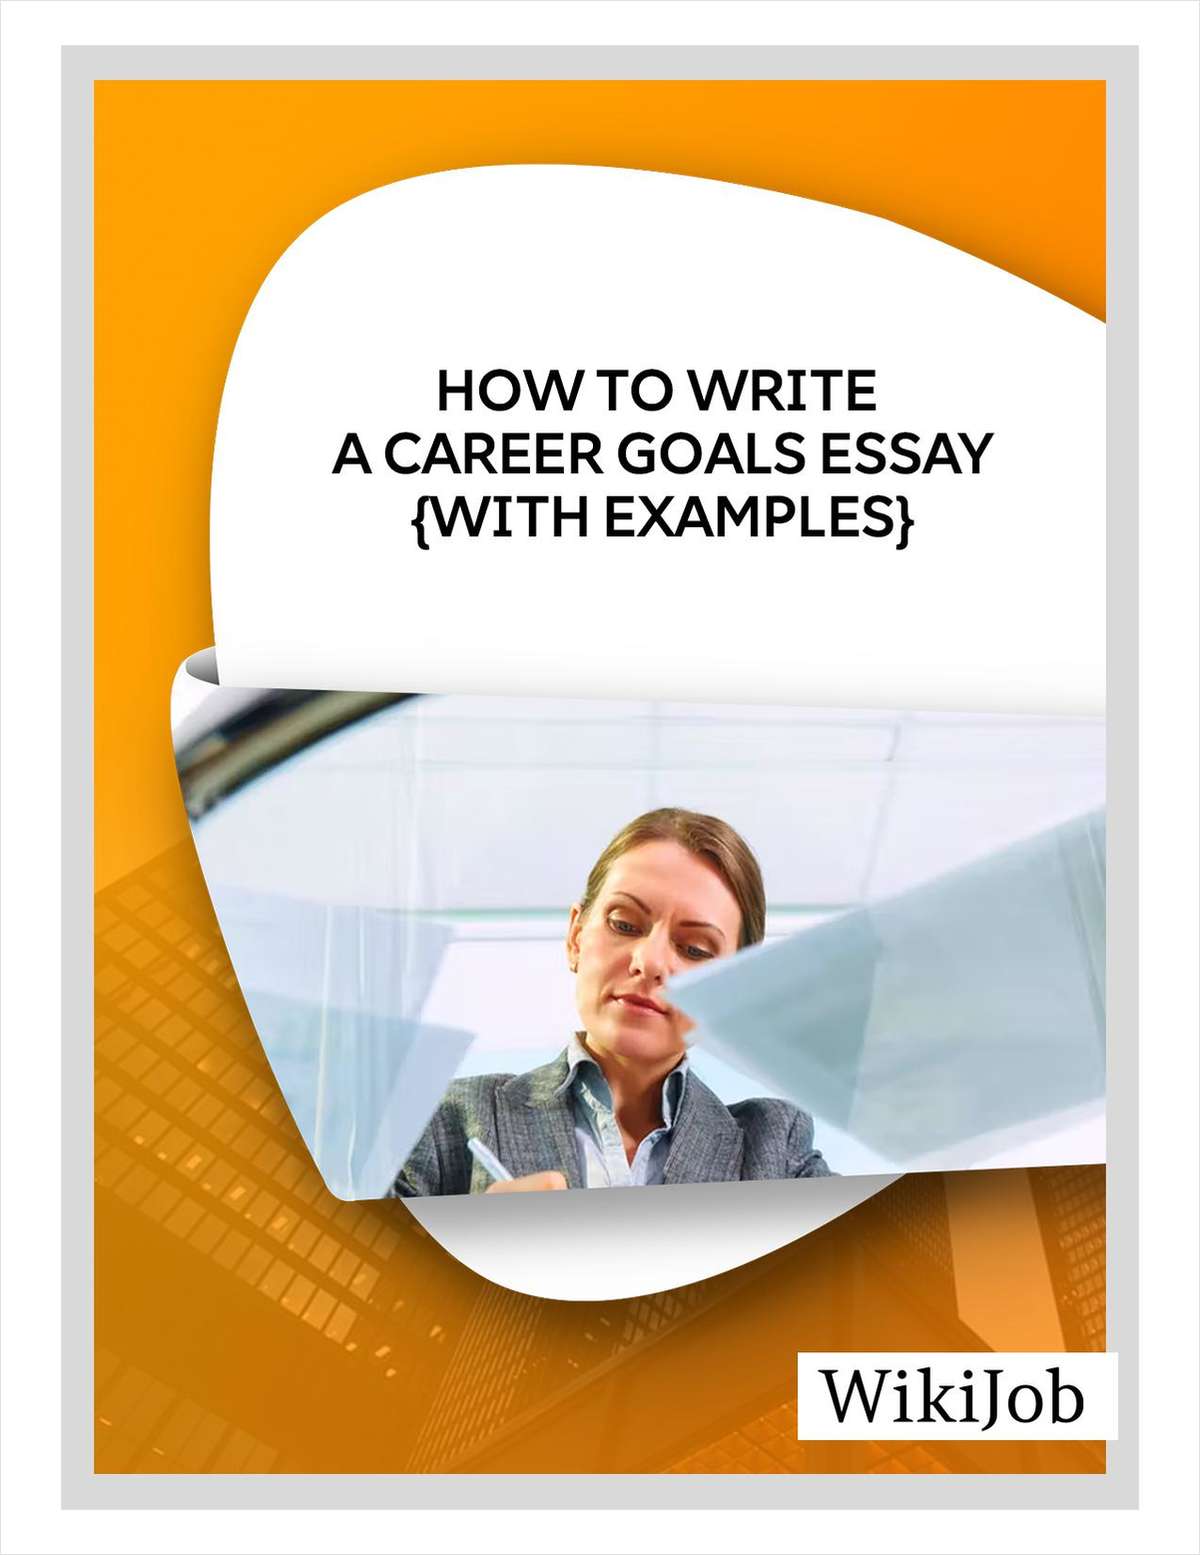 How to Write a Career Goals Essay